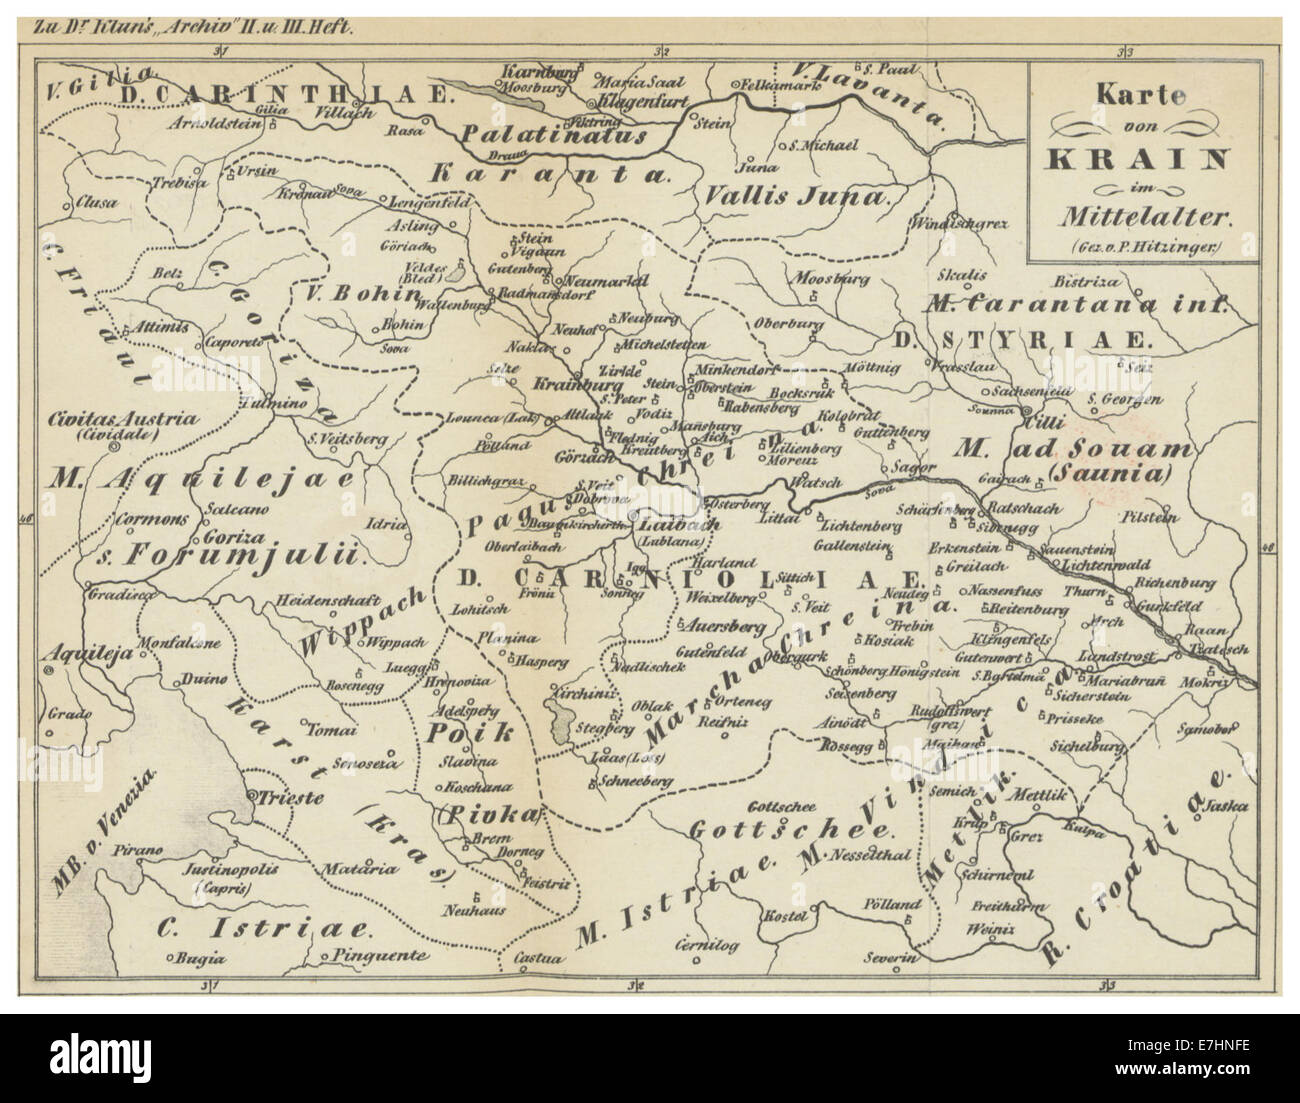 (1854) Karte von KRAIN im Mittelalter Banque D'Images